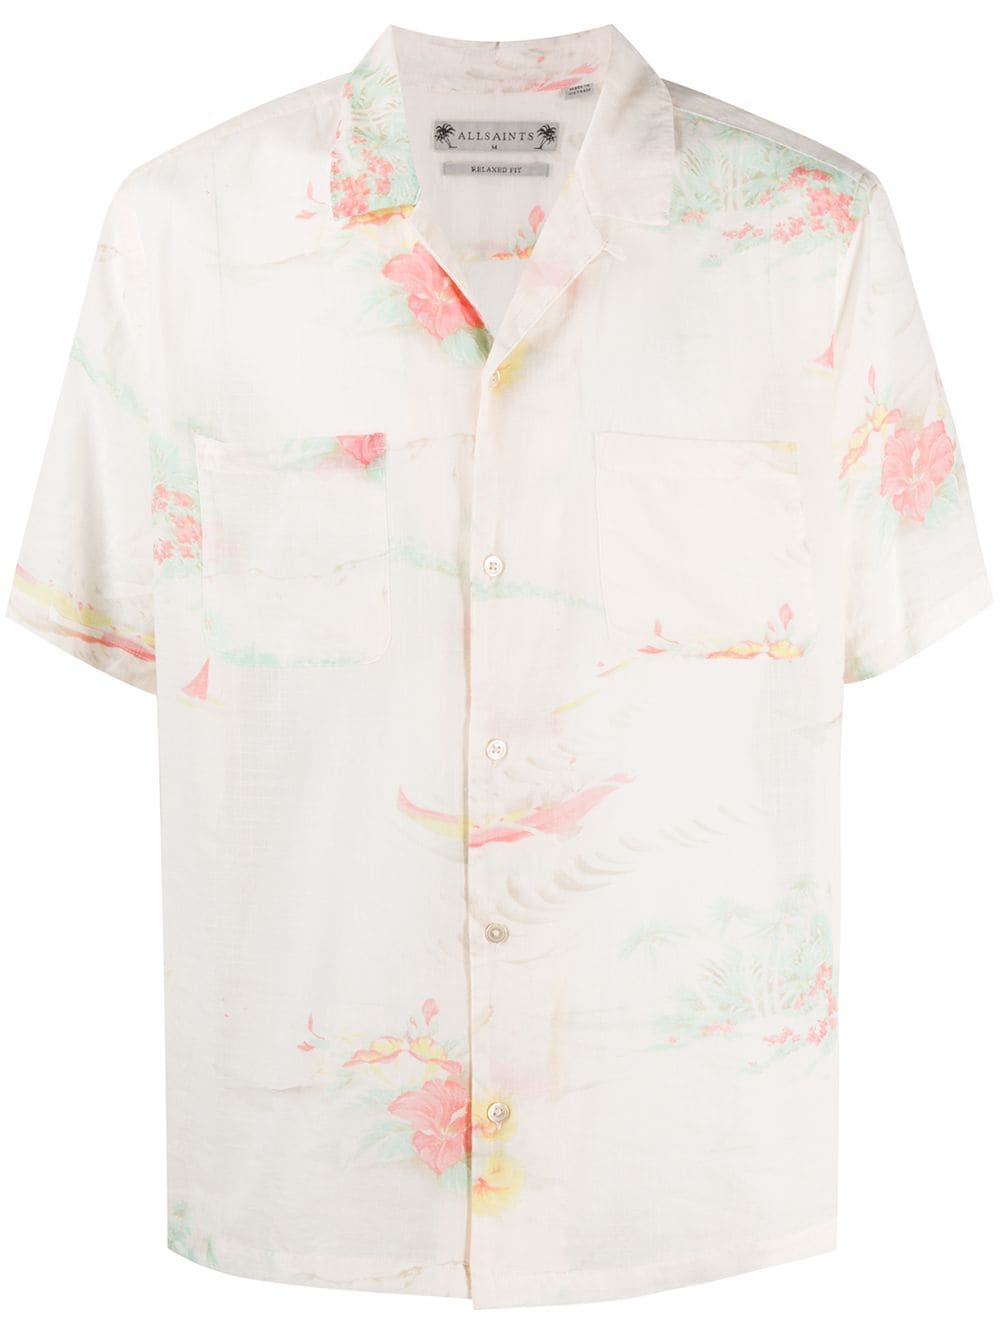 фото Allsaints рубашка hawaiian с цветочным принтом